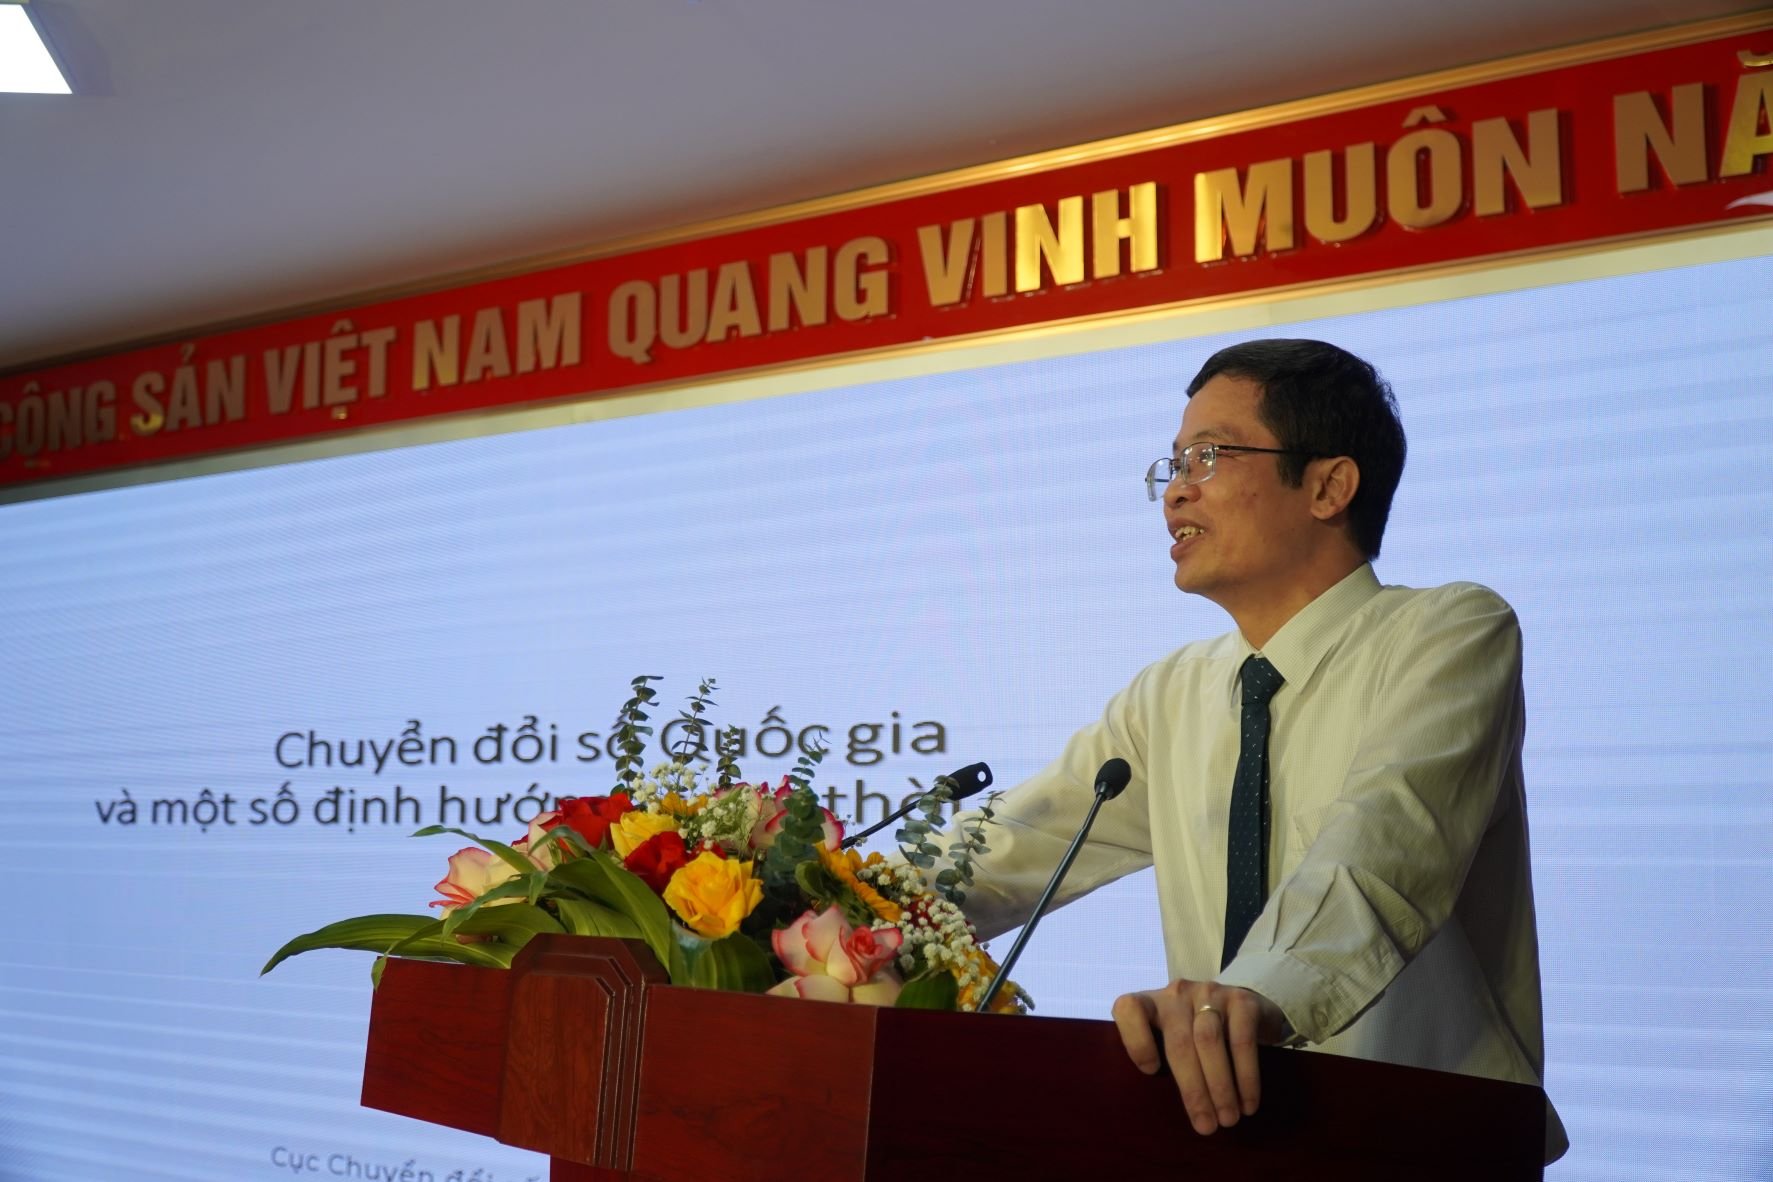 Ông Nguyễn Phú Tiến, Phó Cục trưởng Cục Chuyển đổi số Quốc gia, Bộ Thông tin và Truyền thông phát biểu tại Hội nghị. Ảnh: Hoàng Đông